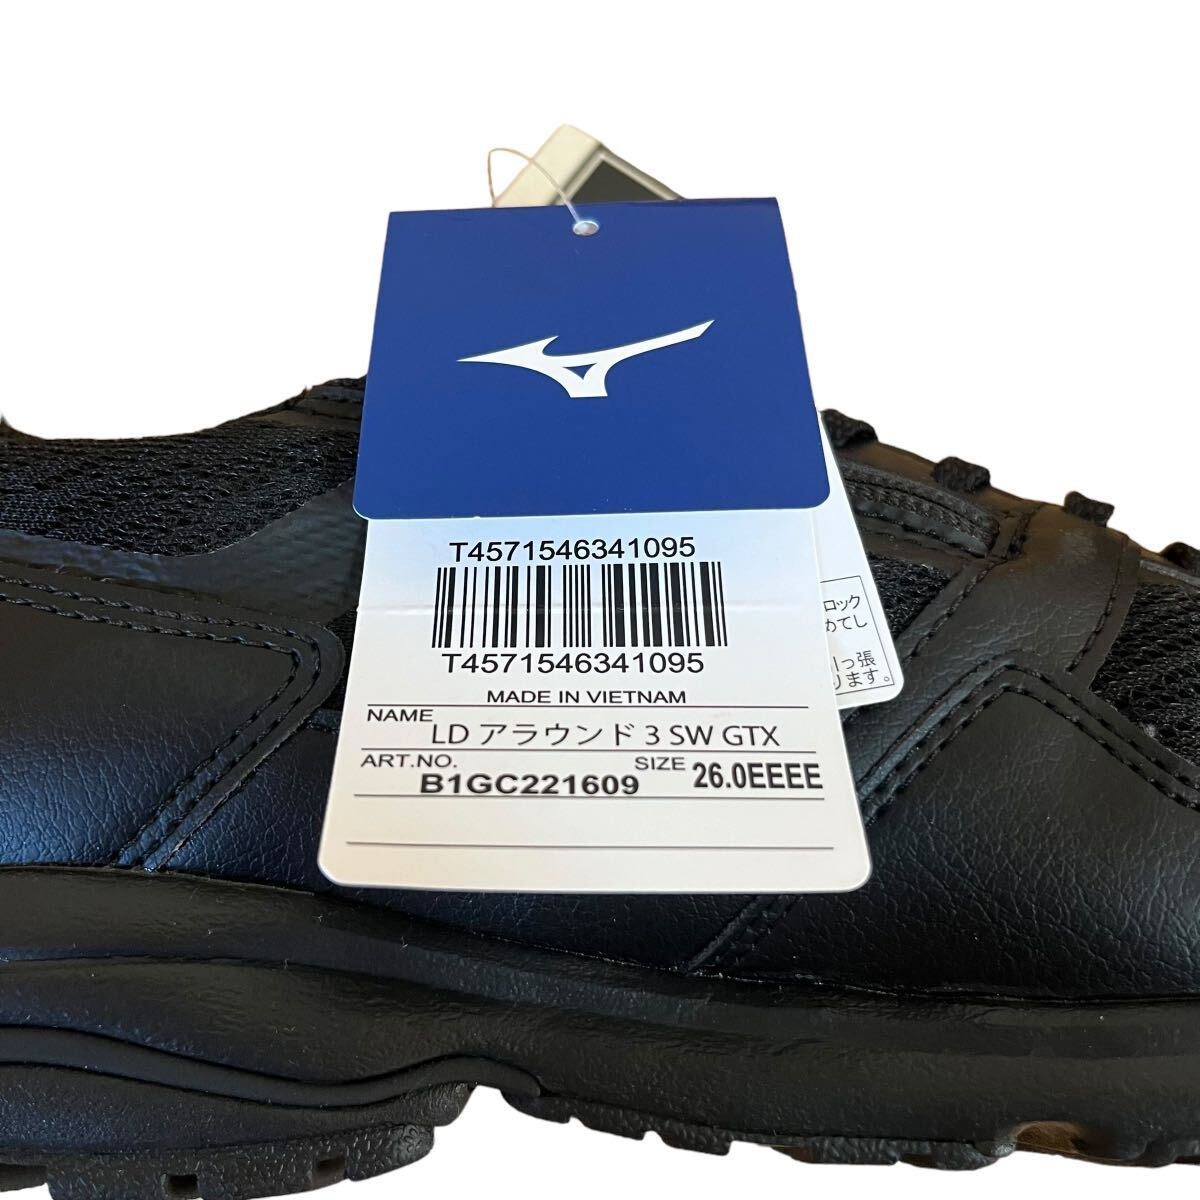 [1 jpy exhibition ] 1 start Mizuno walking shoes Gore-Tex waterproof waterproof comfort shoes gentleman men's sneakers 4E business new goods 